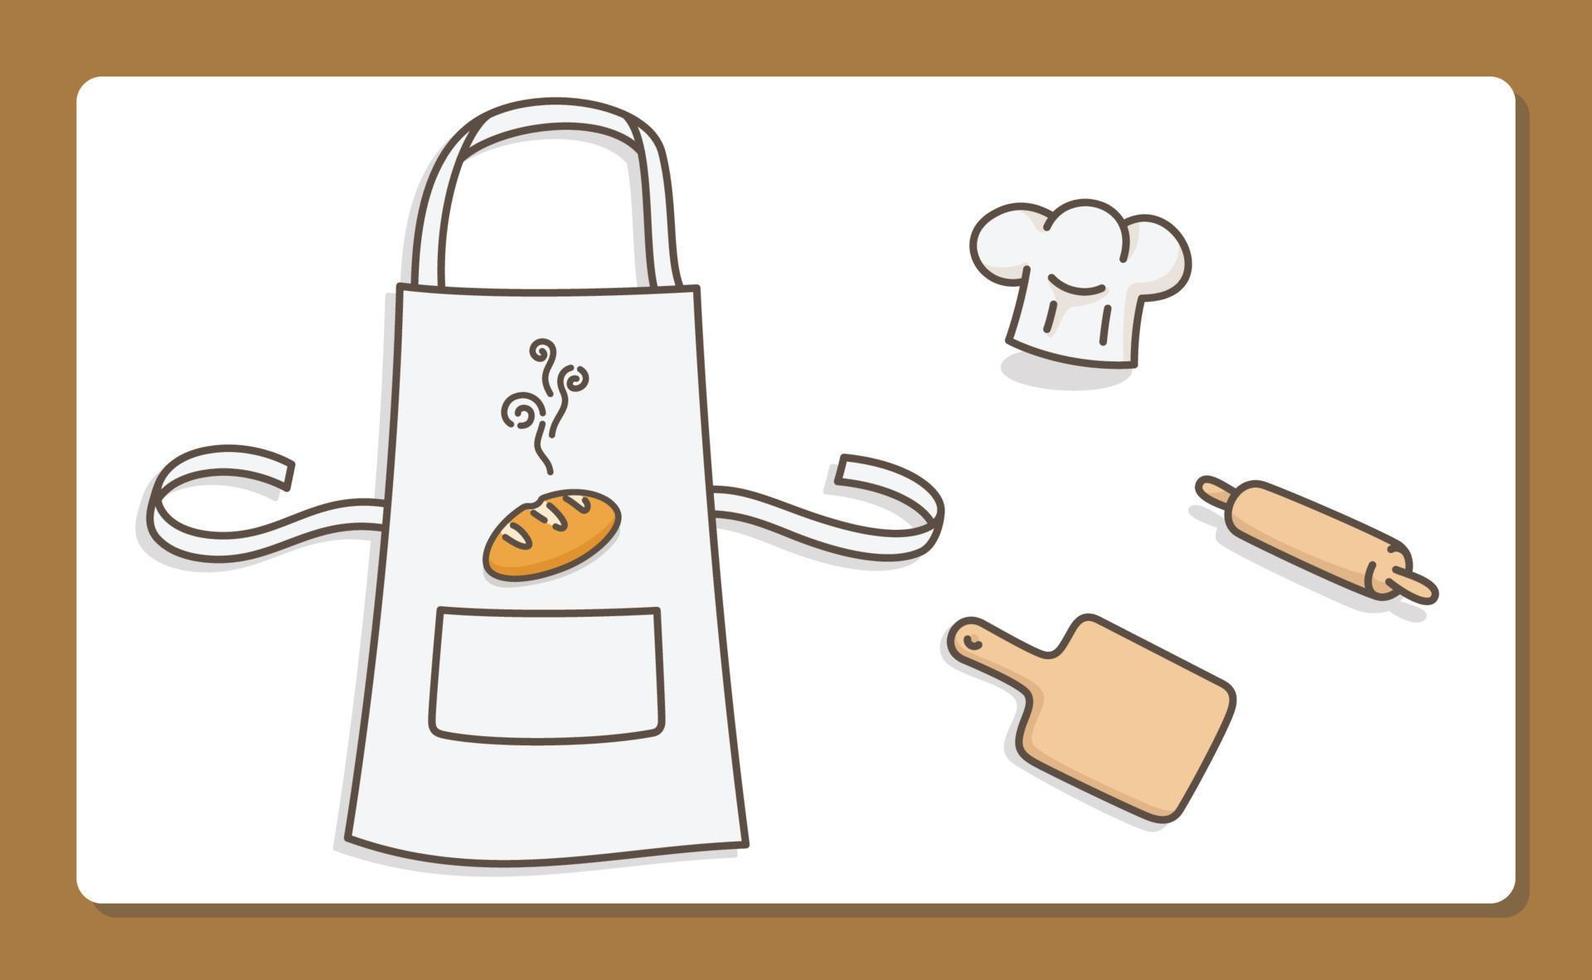 équipement de fabrication de pain kawaii doodle illustration vectorielle de dessin animé plat vecteur